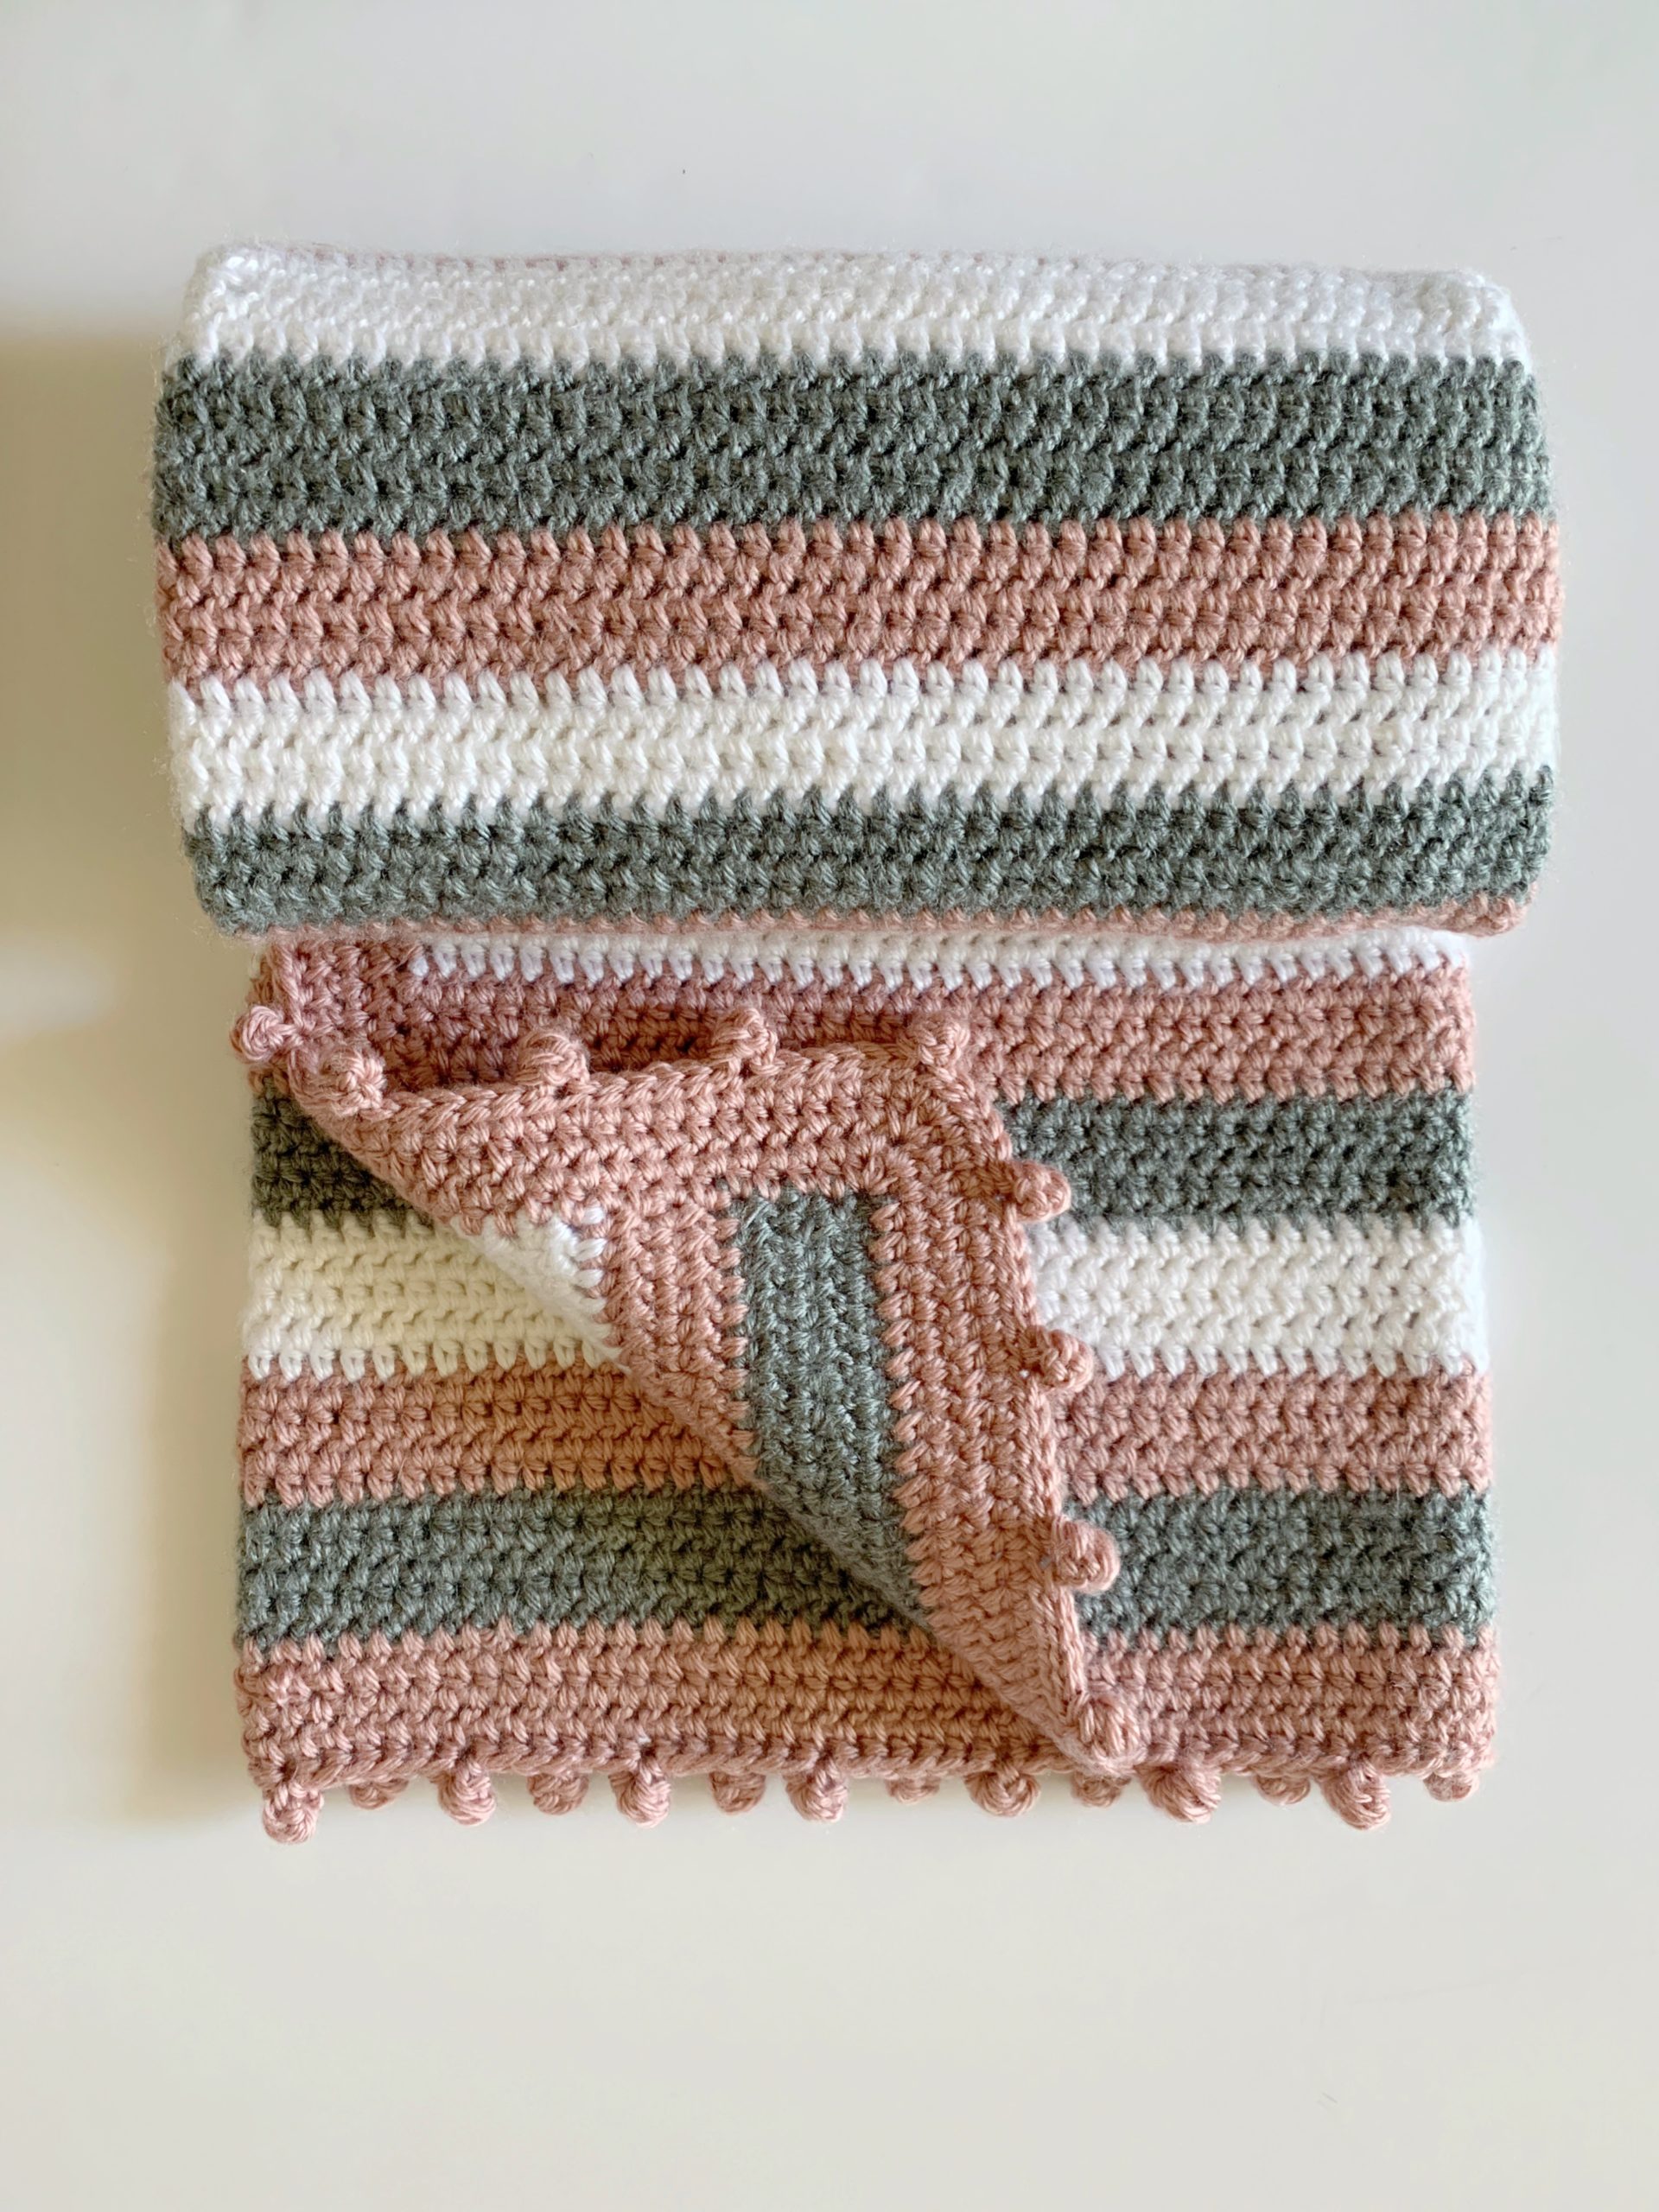 Beginner Soft Stripes and Dot Border Crochet Baby Blanket | Daisy Farm